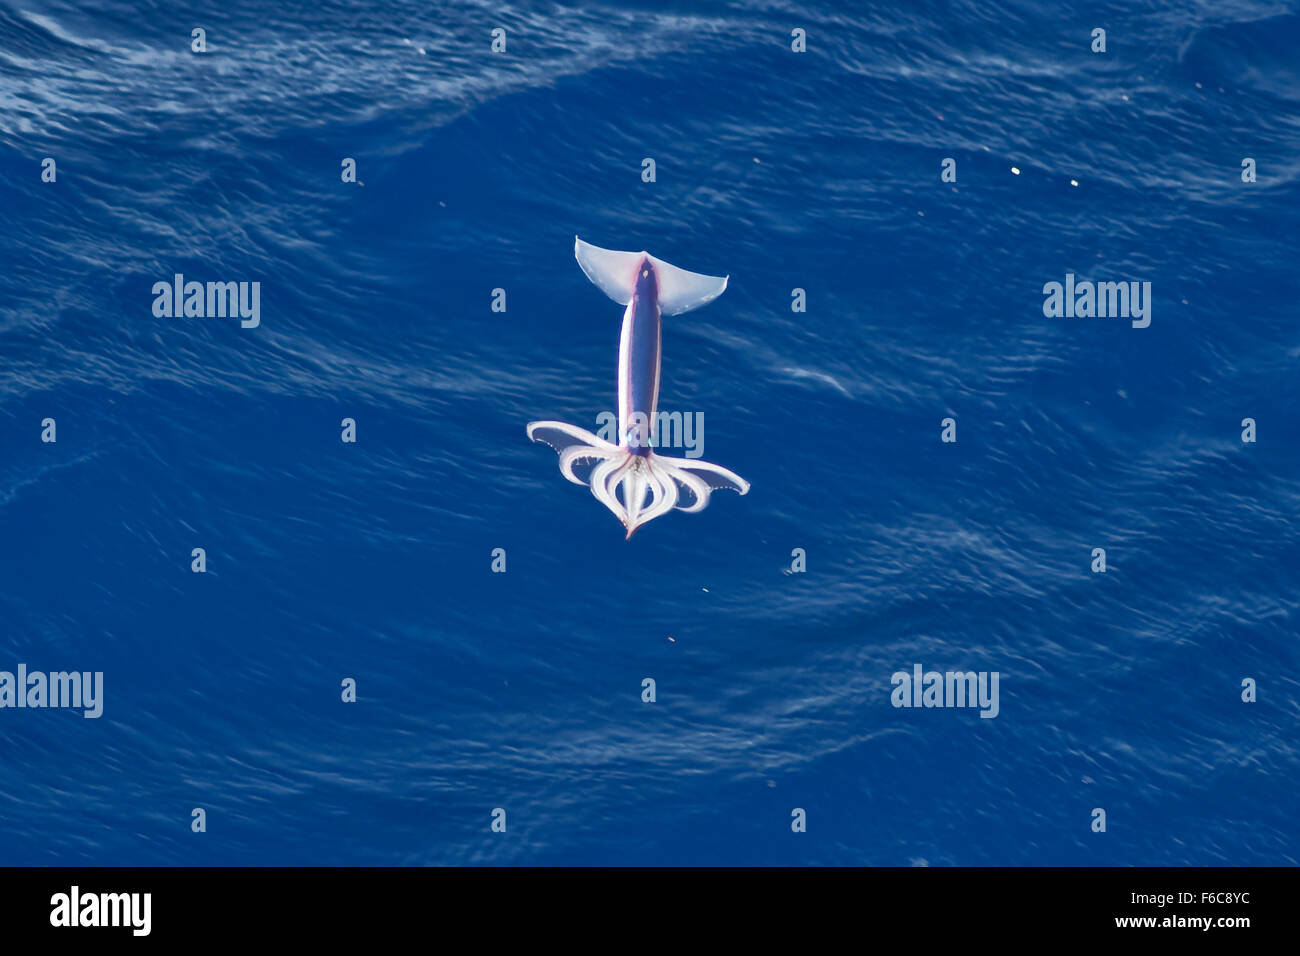 Imagen muy rara de un neón Potas (Ommastrephes bartramii) en medio del aire, el Océano Atlántico Sur, no una manipulación digital Foto de stock